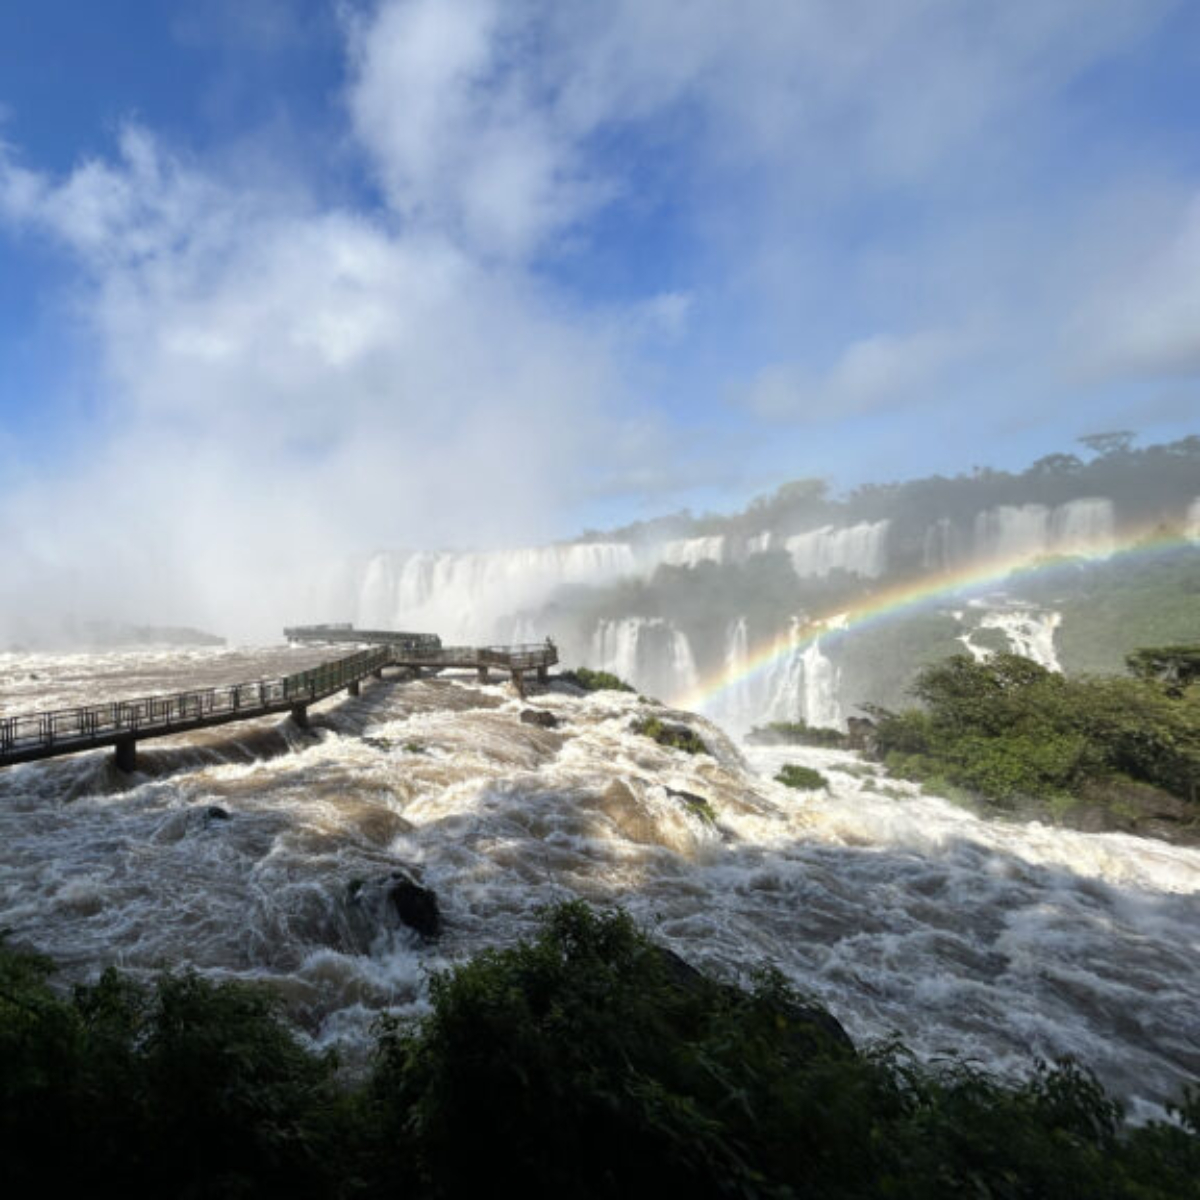  Parque Nacional do Iguaçu, que abriga as Cataratas do Iguaçu, completa 85 anos nesta quarta-feira 